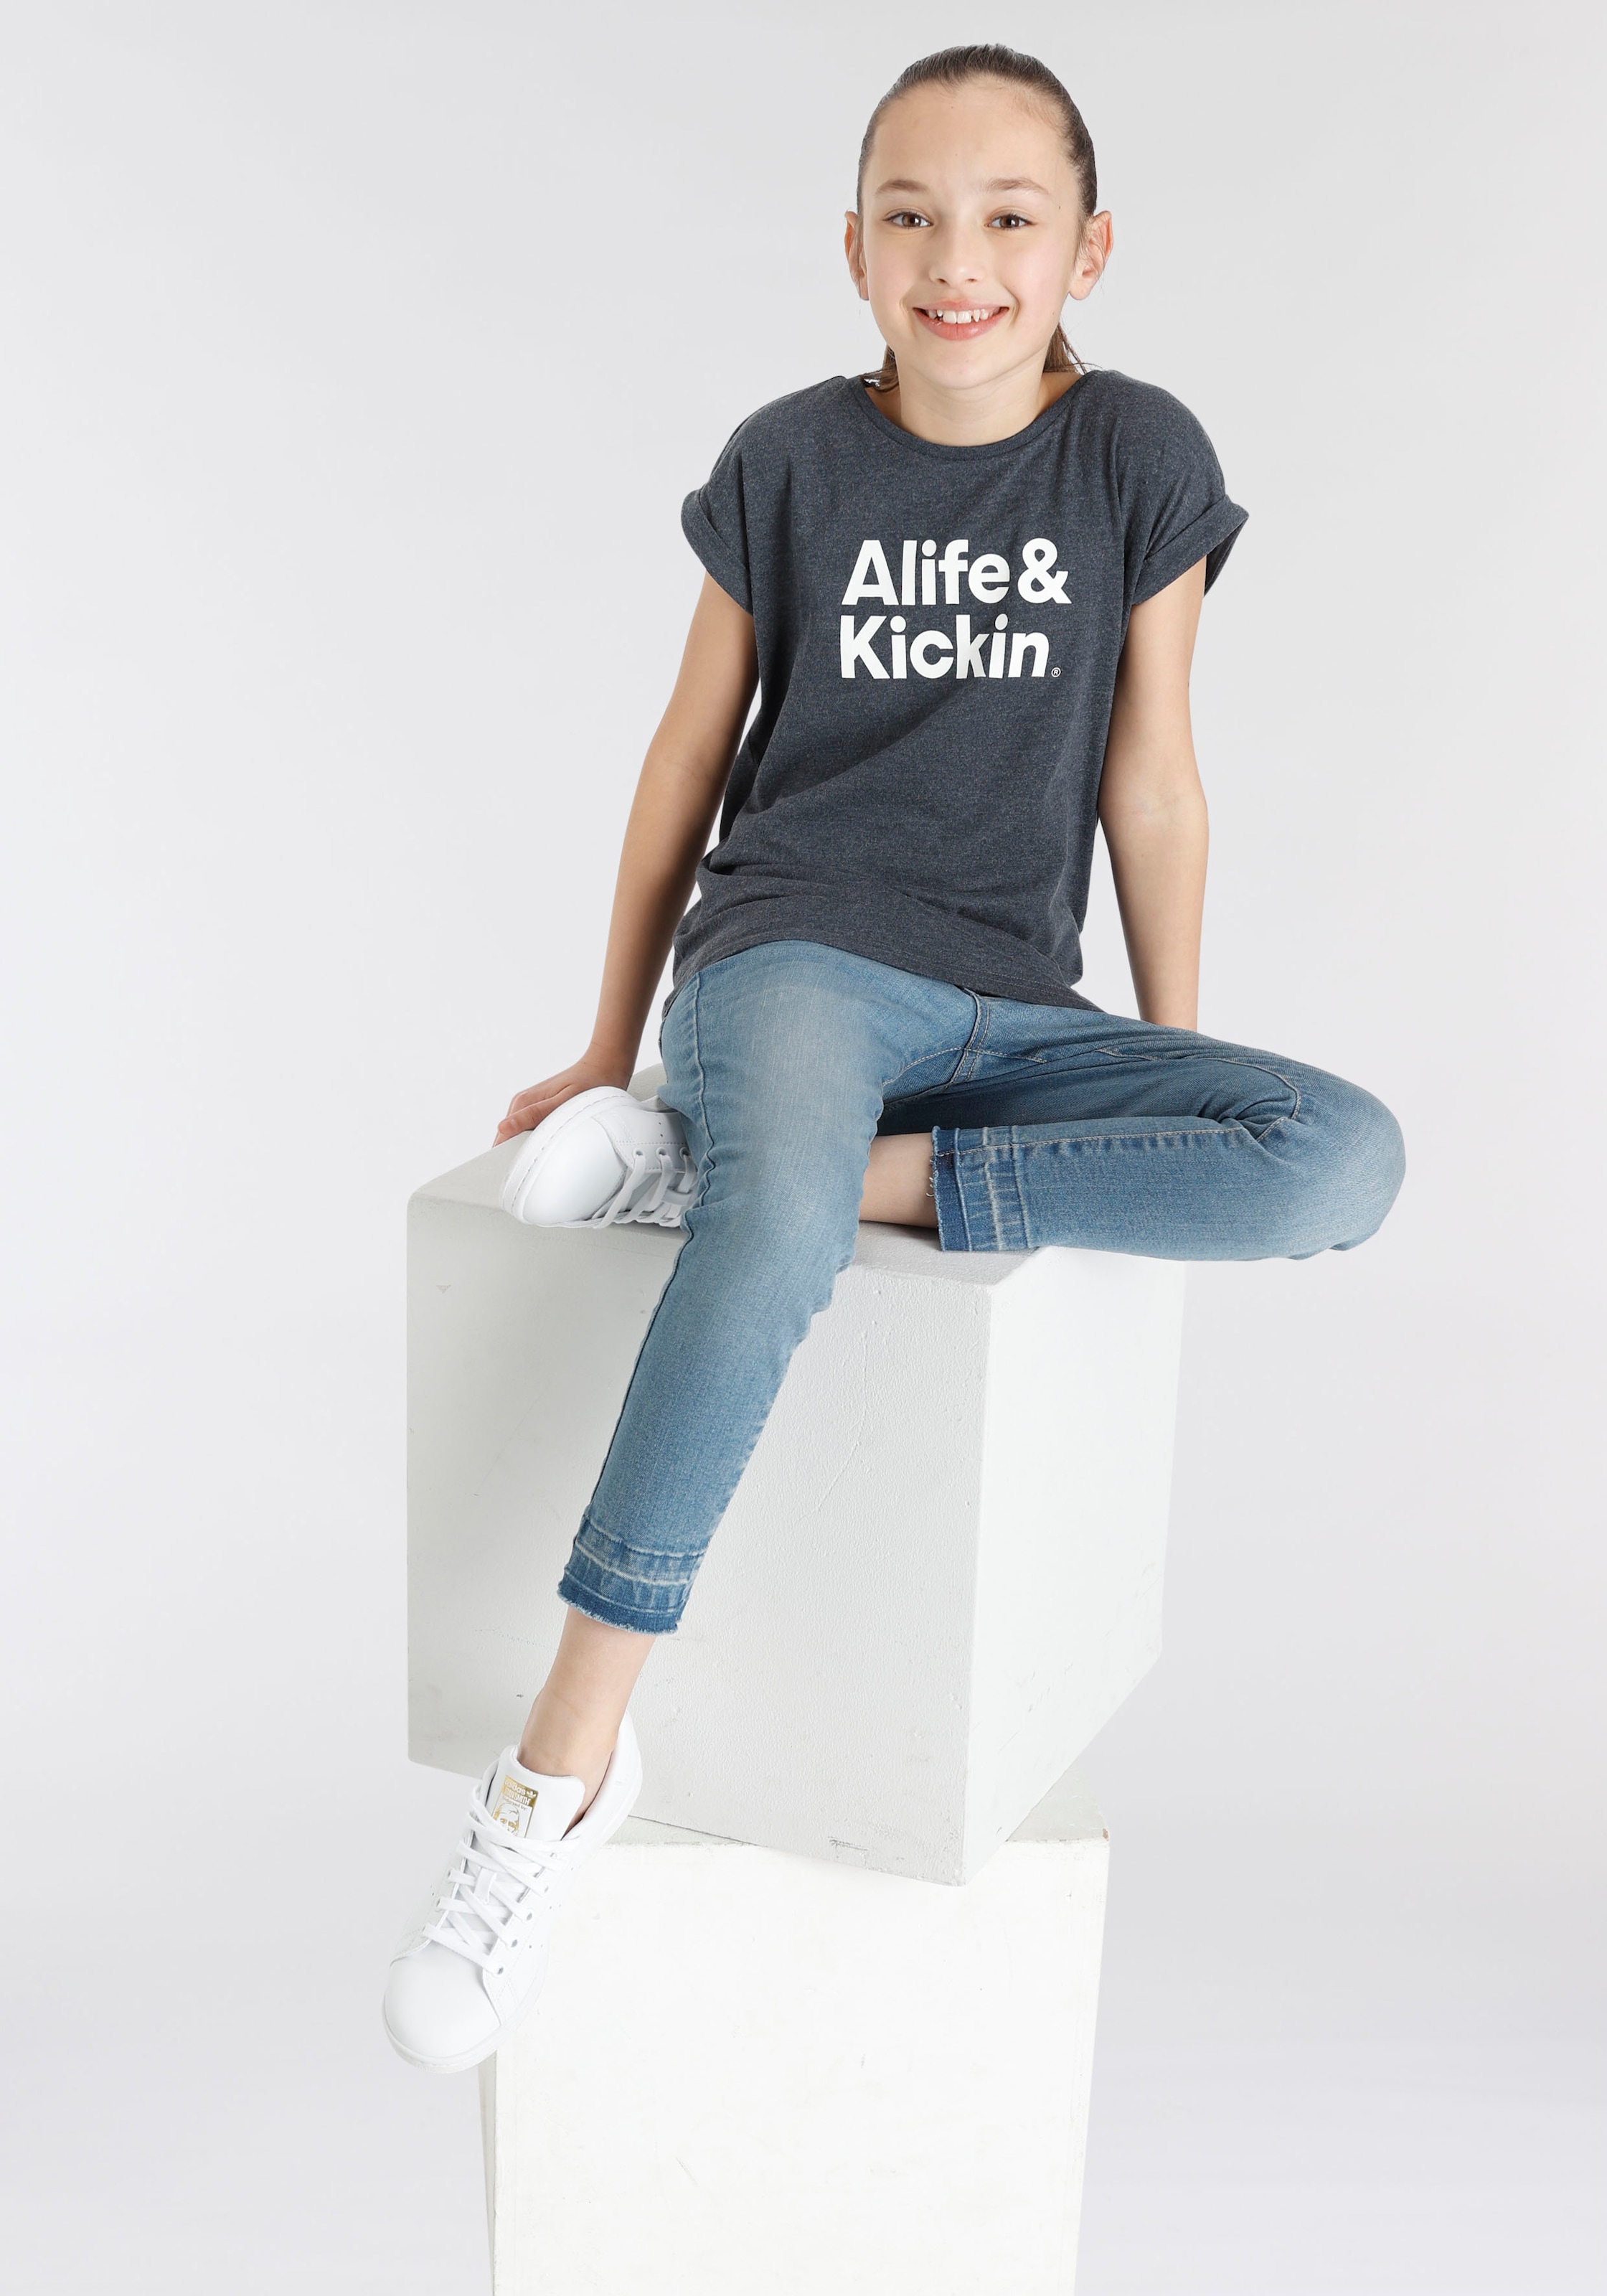 BAUR | Kickin für Druck«, & MARKE! »mit Kickin Alife NEUE T-Shirt online Kids. Alife bestellen & Logo